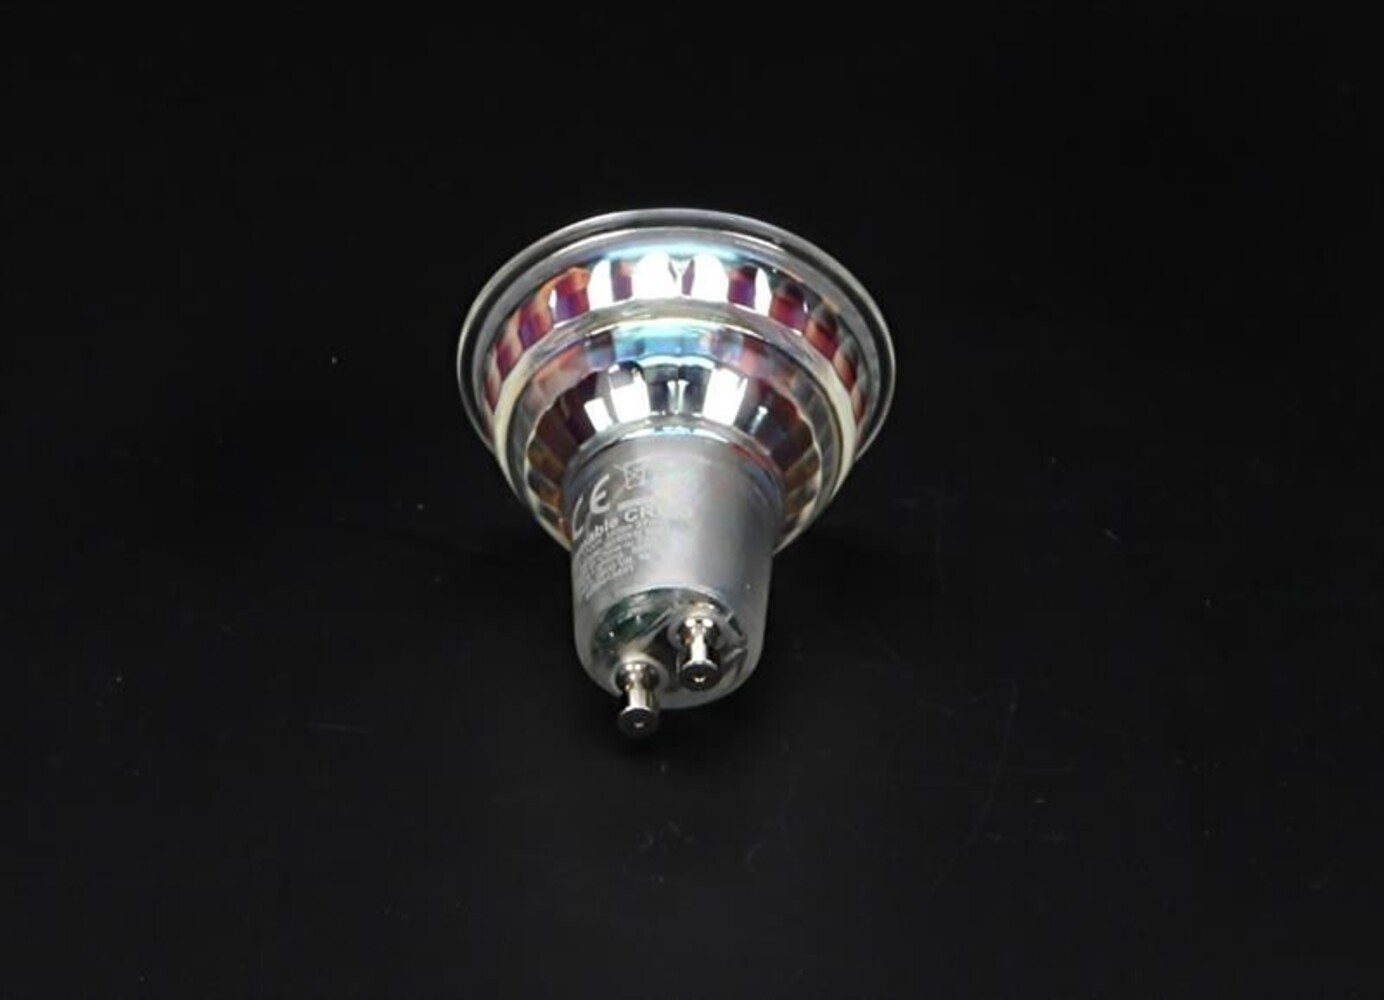 Hochwertiges LEDspot MV GU10 Leuchtmittel der Marke Phillips, ausgelegt für 220-240V AC, 50-60Hz